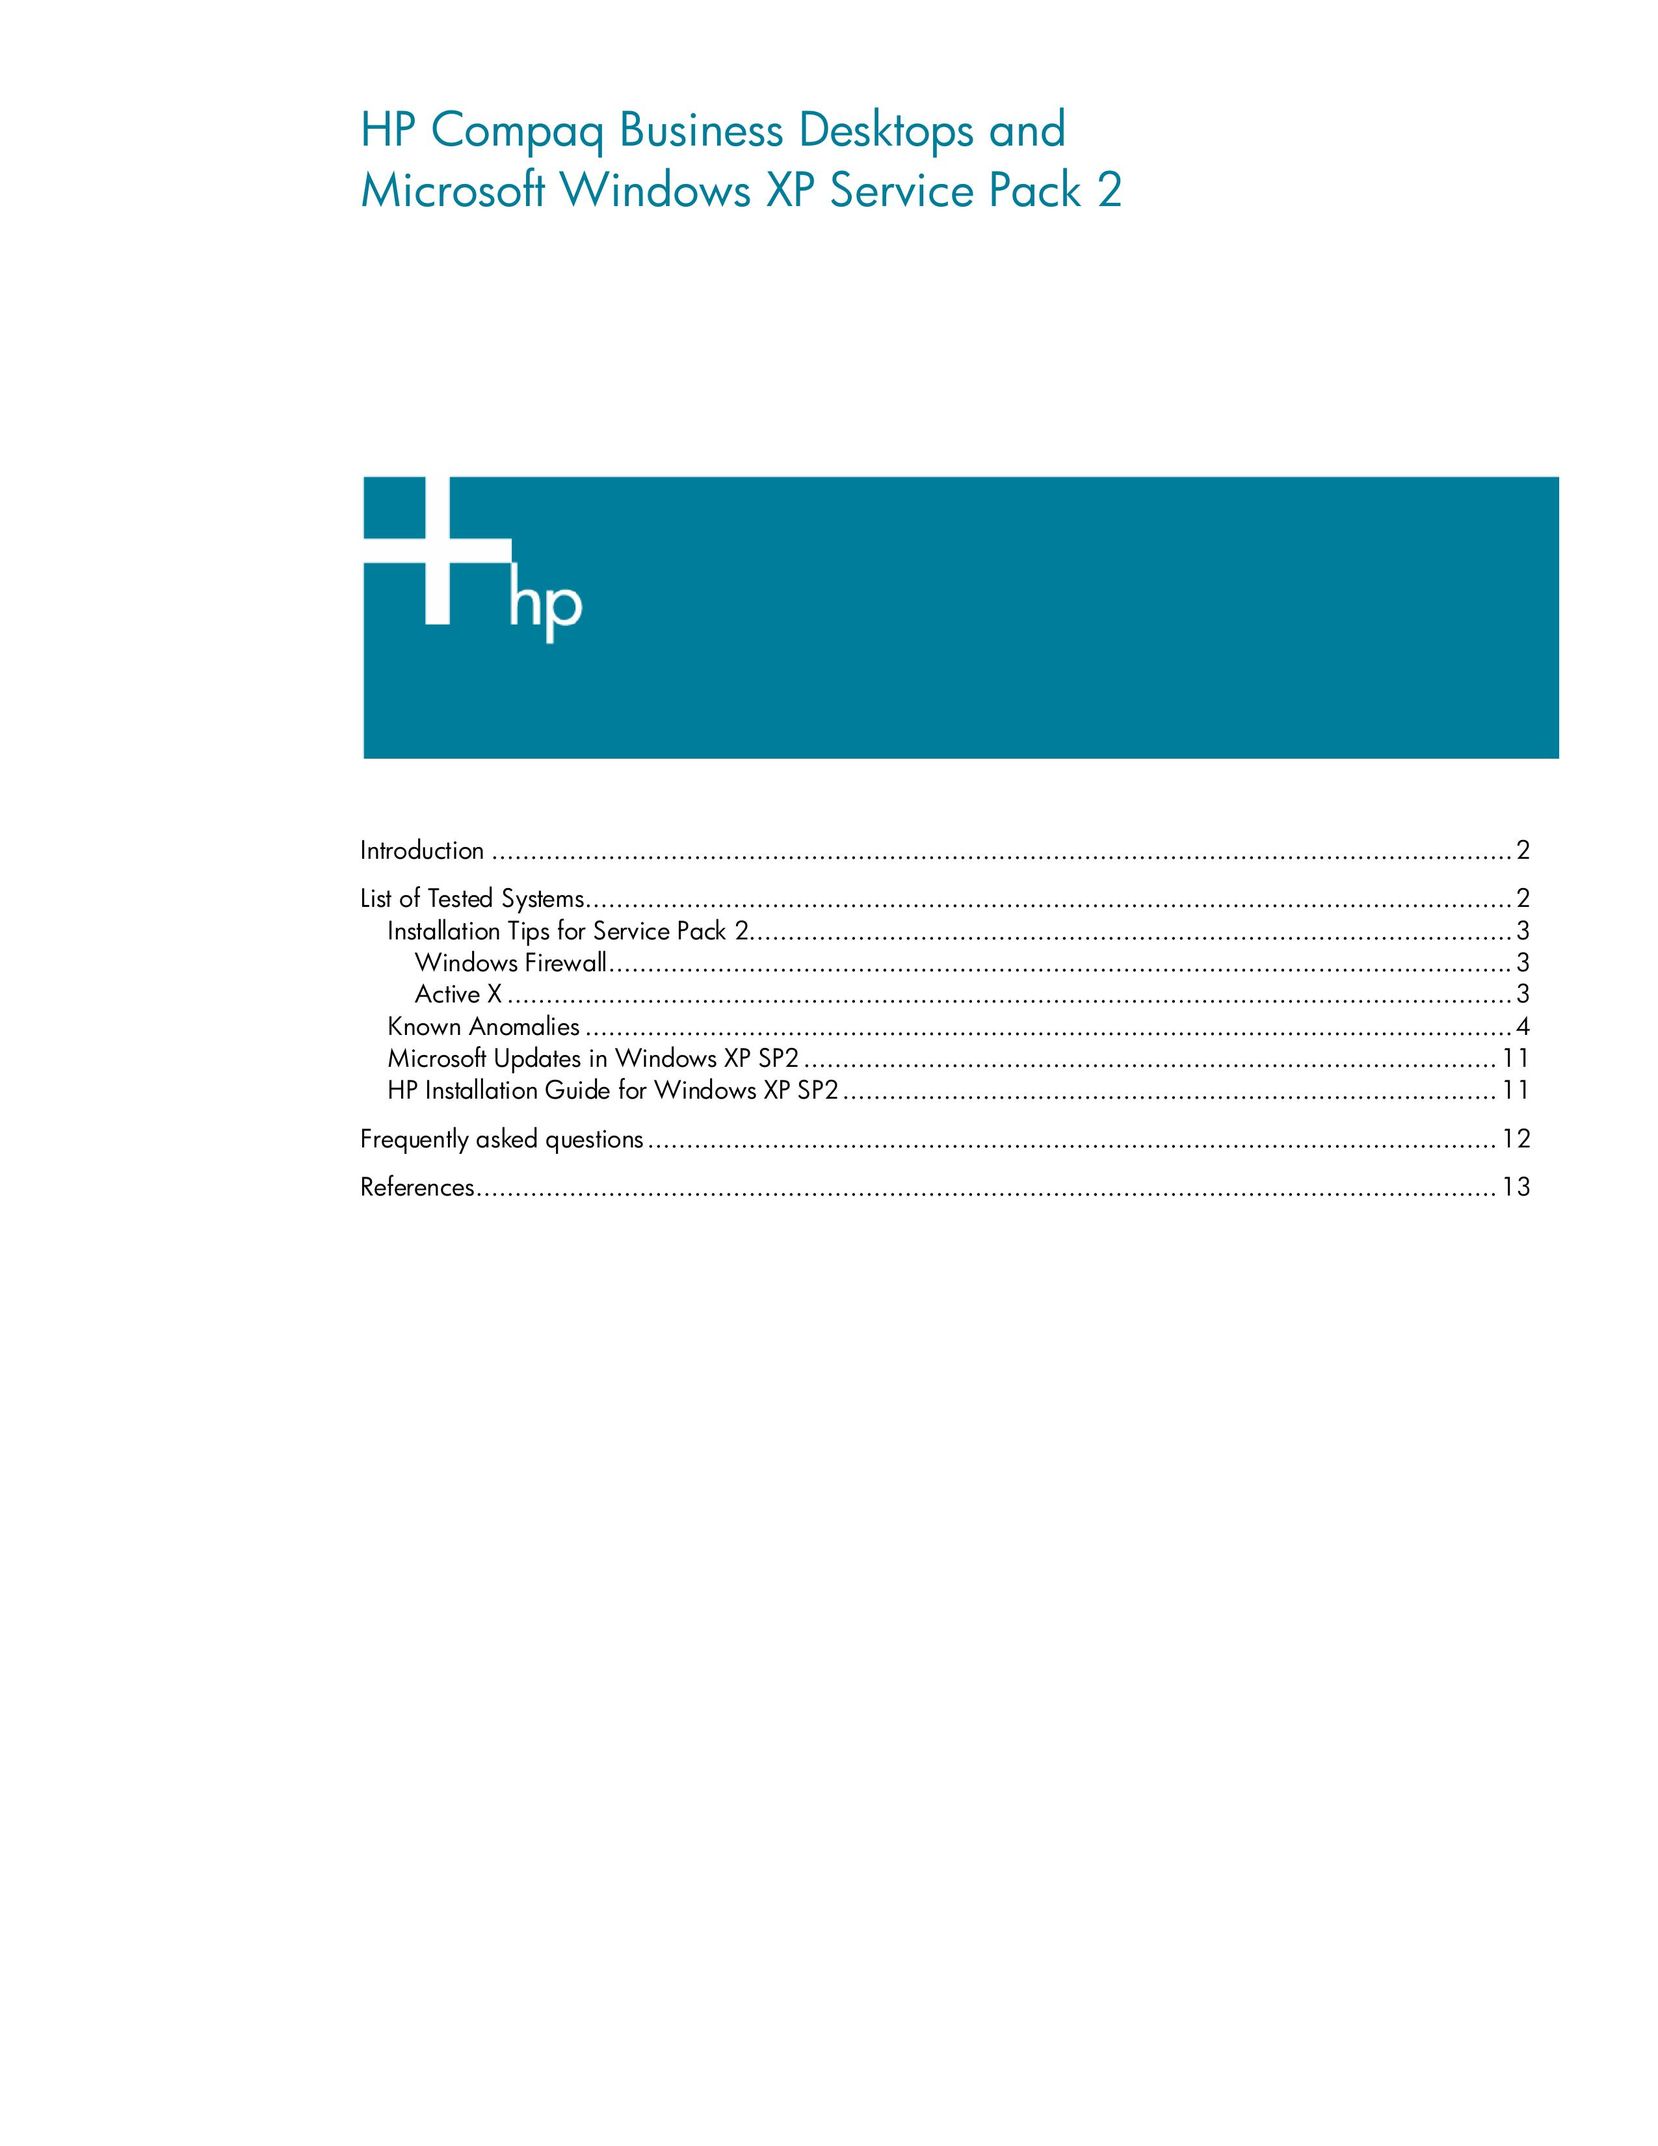 HP (Hewlett-Packard) 2 Personal Computer User Manual